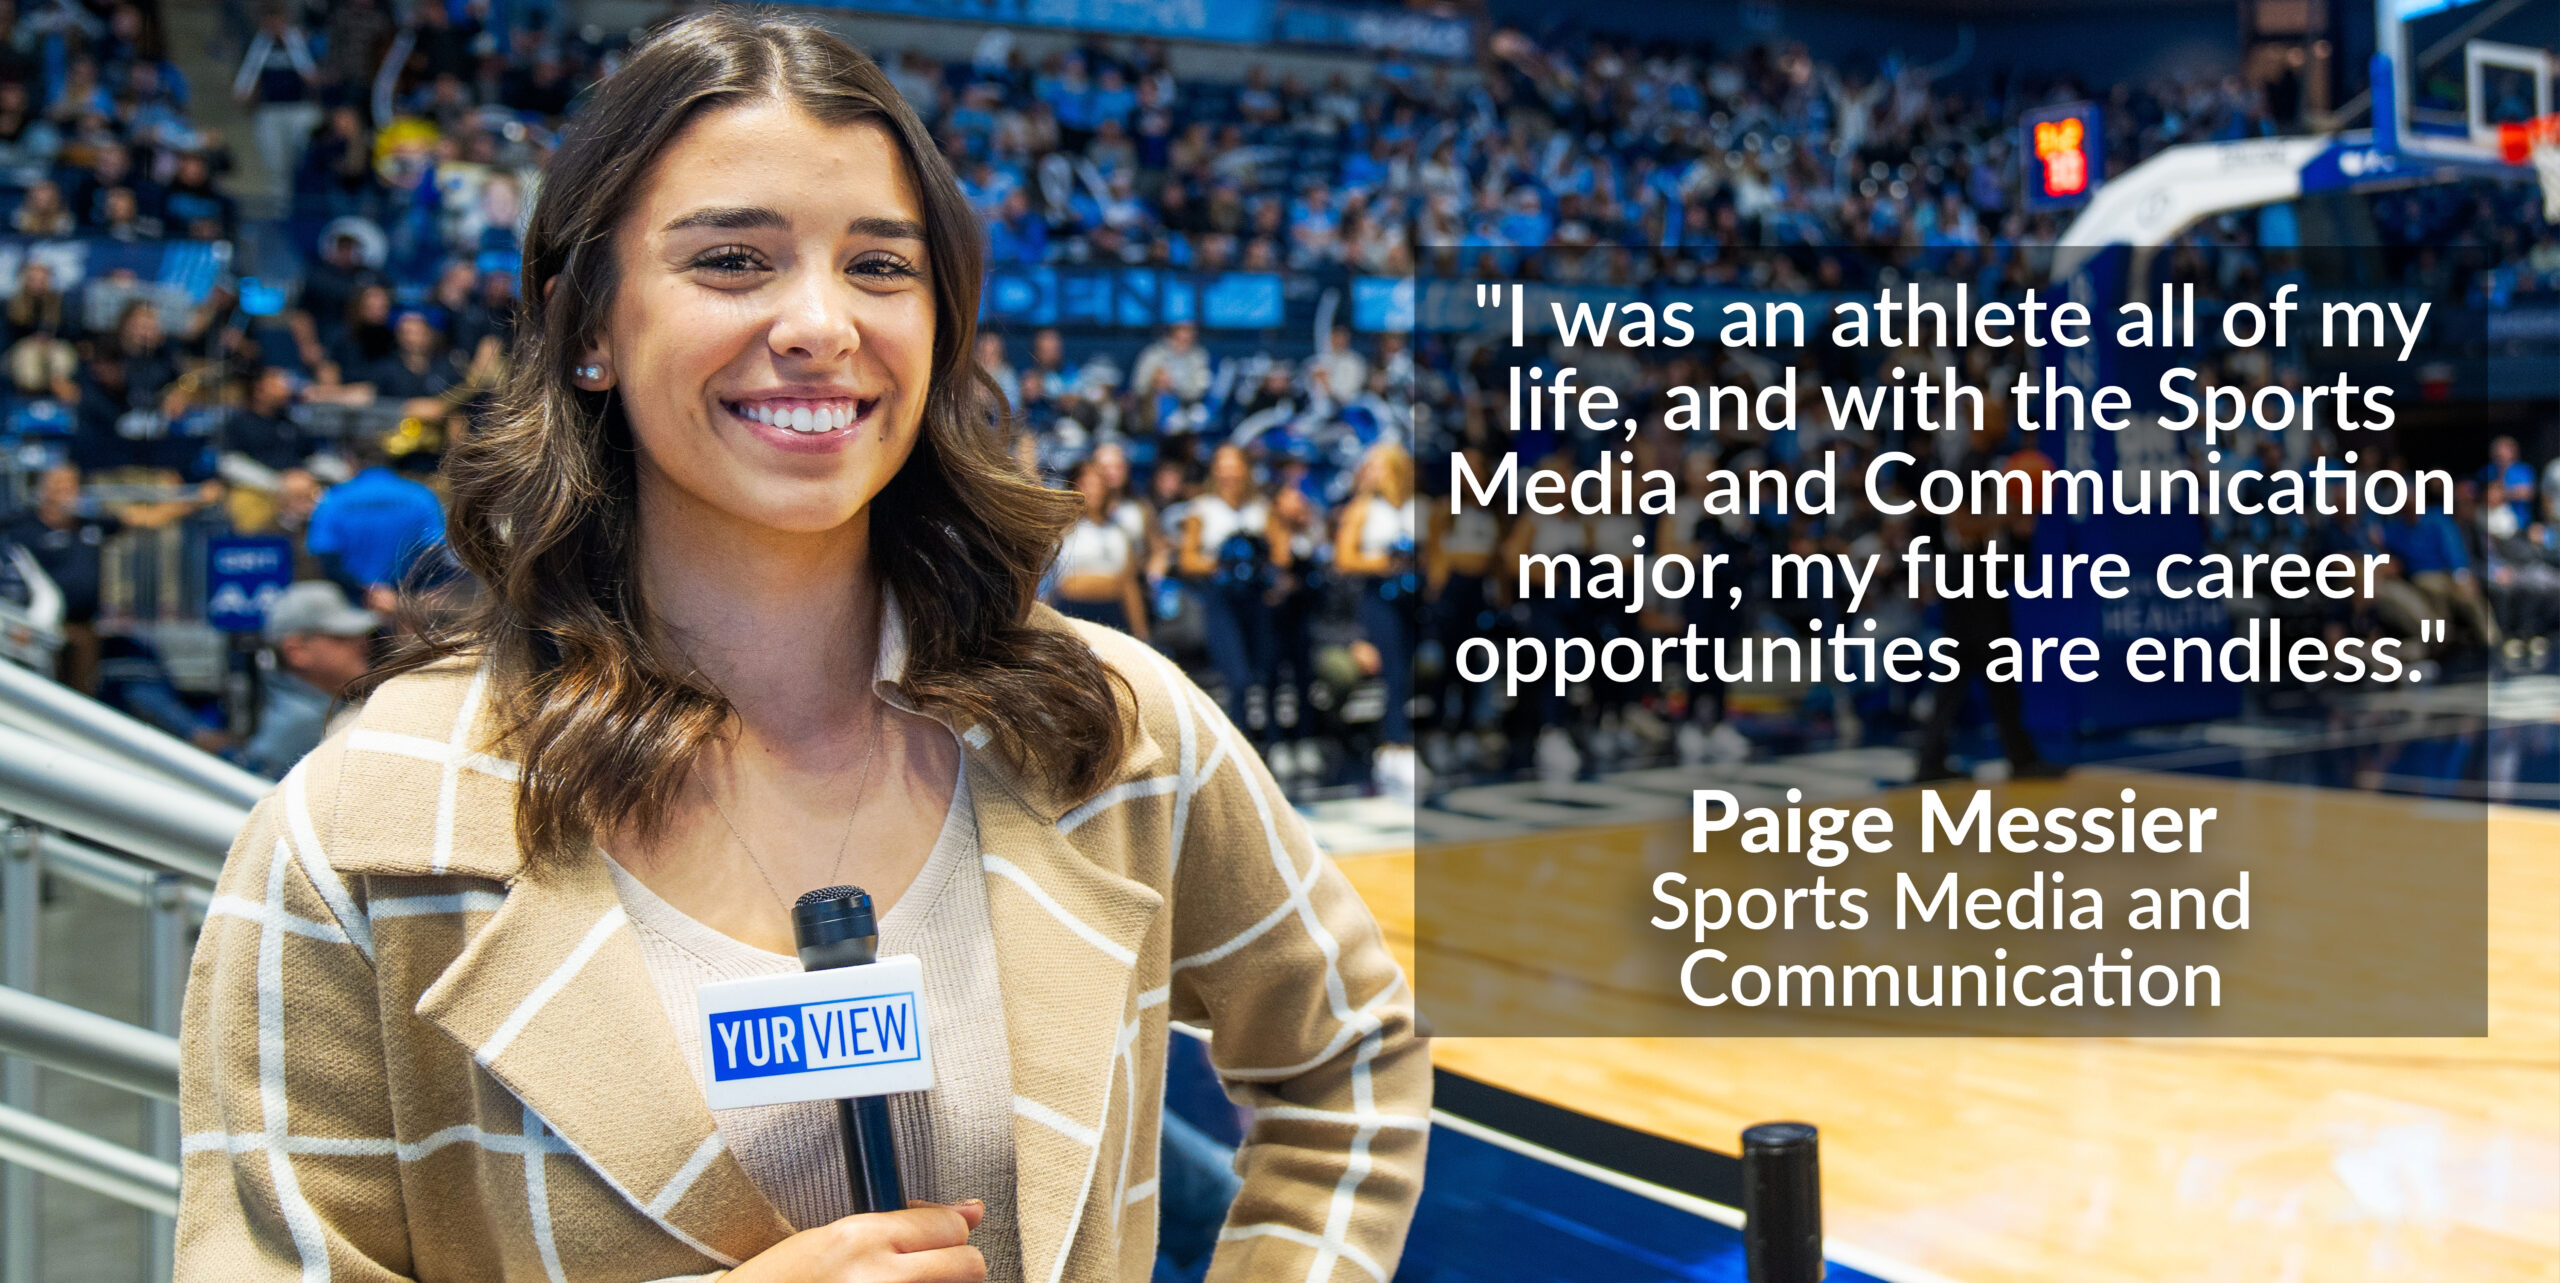 体育媒体学生Paige Messier的照片，引用“我一生都是一名运动员，通过体育媒体与传播专业，我未来的职业机会是无限的。”